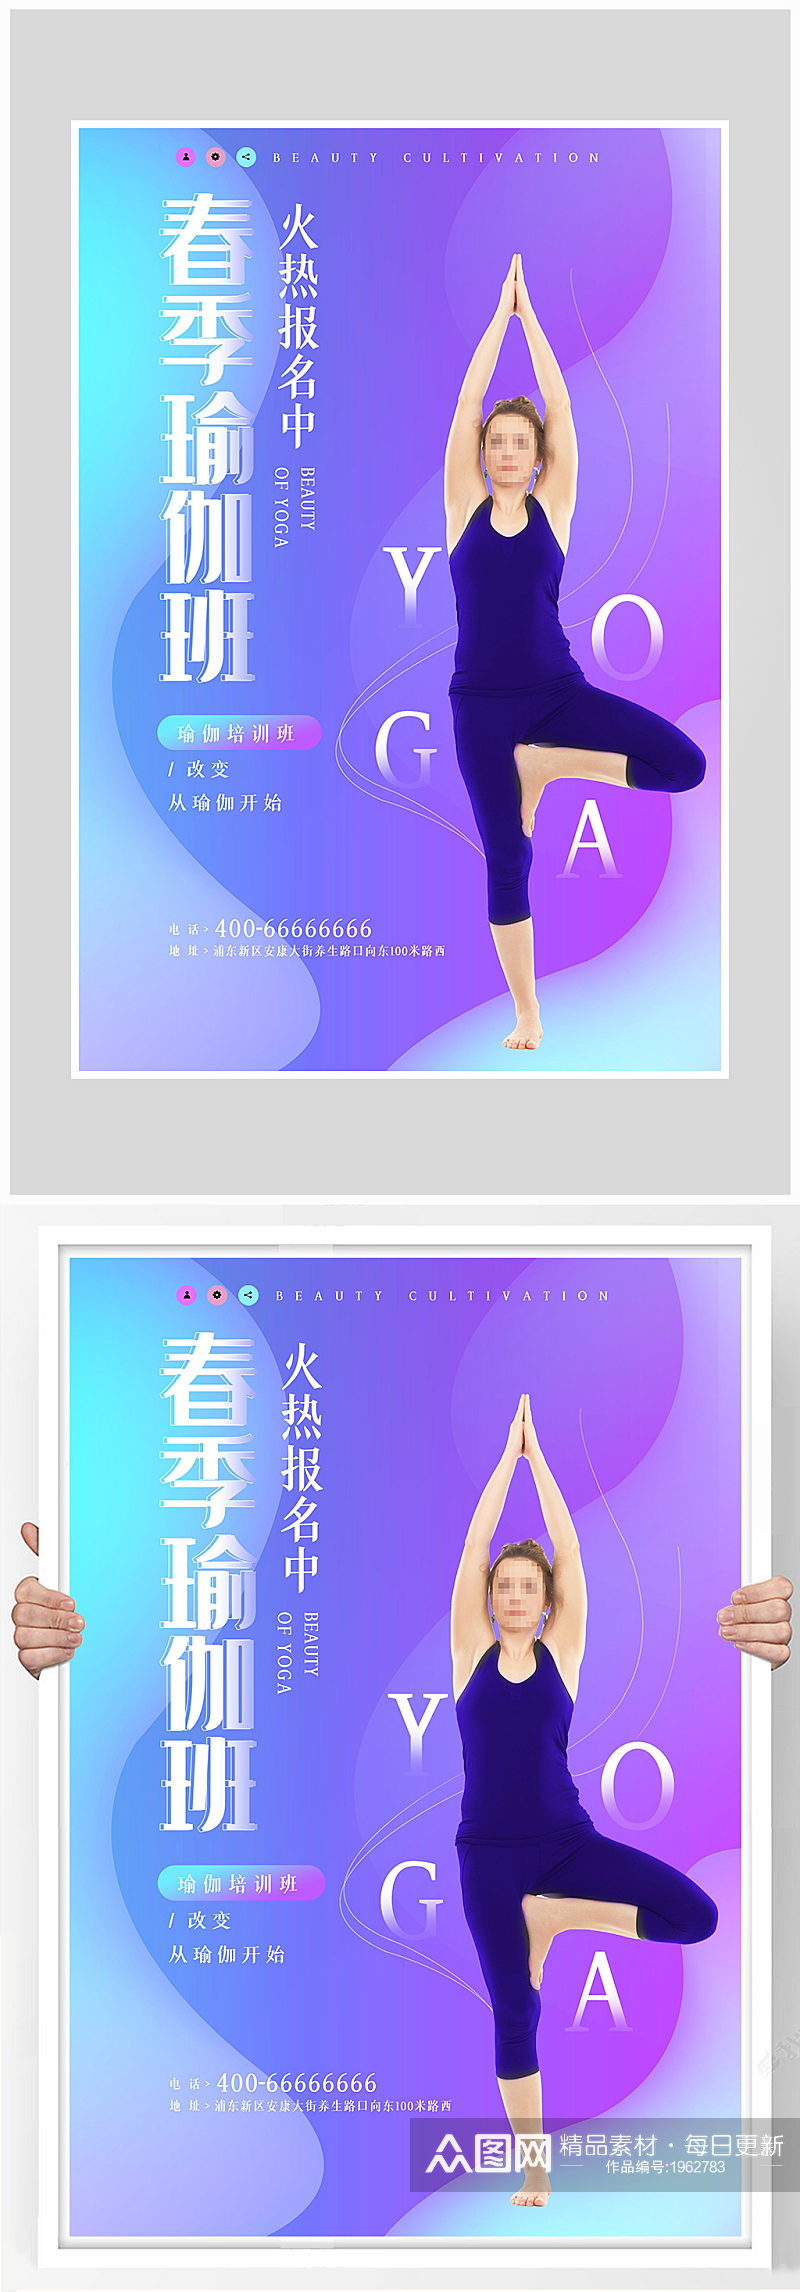 创意质感扁平化瑜伽健身海报设计素材